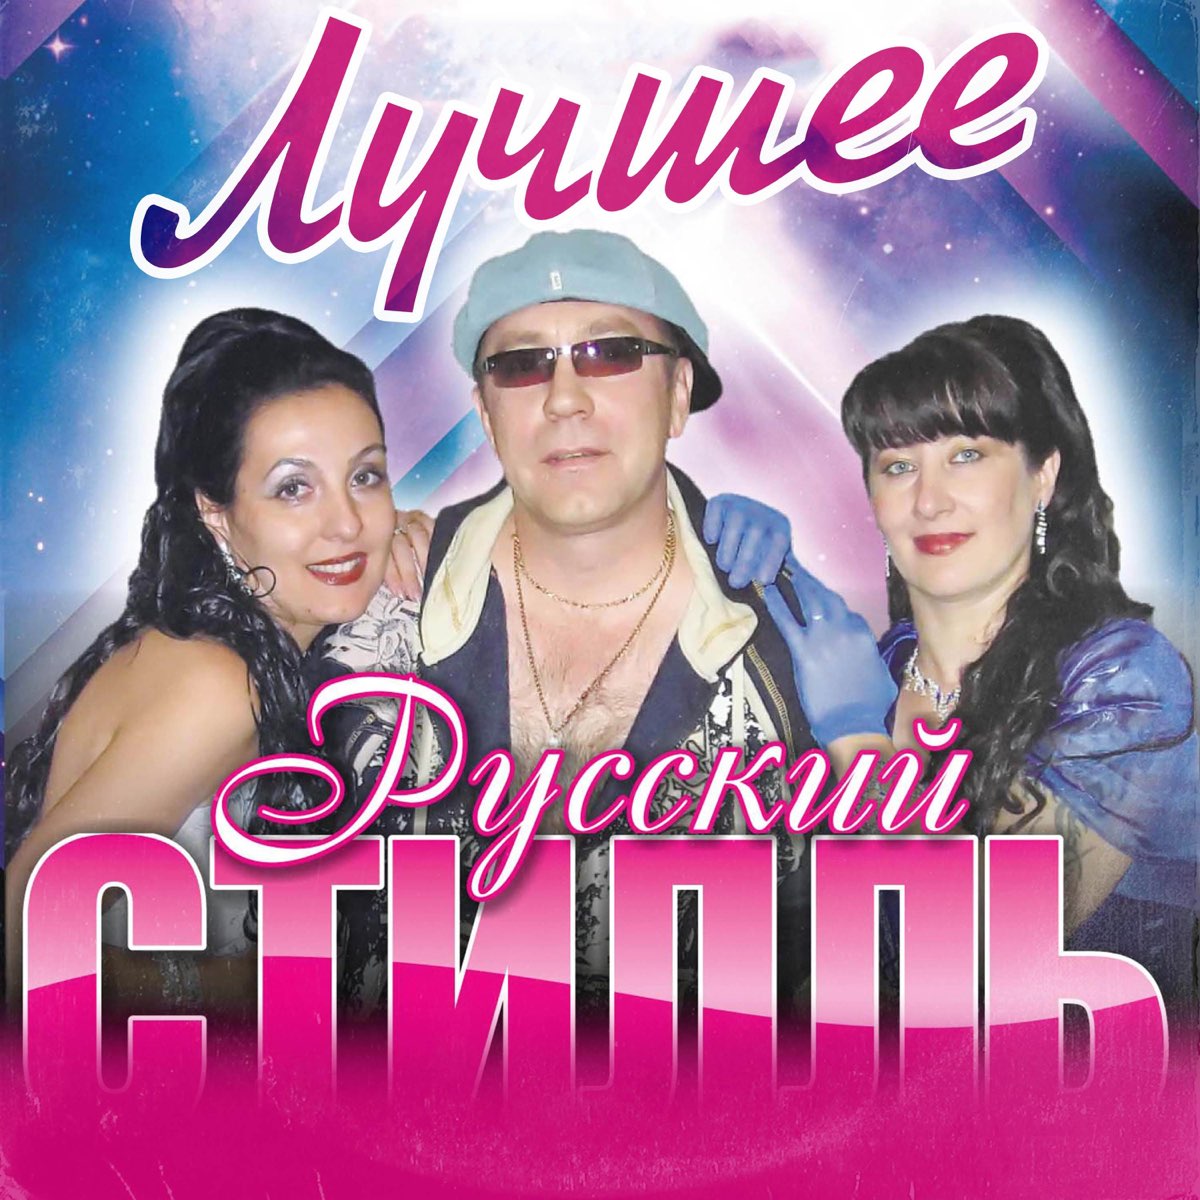 Песня русский стиль не ревнуй. Пахомов и группа русский стиль. Диско группа русский стиль солистки.